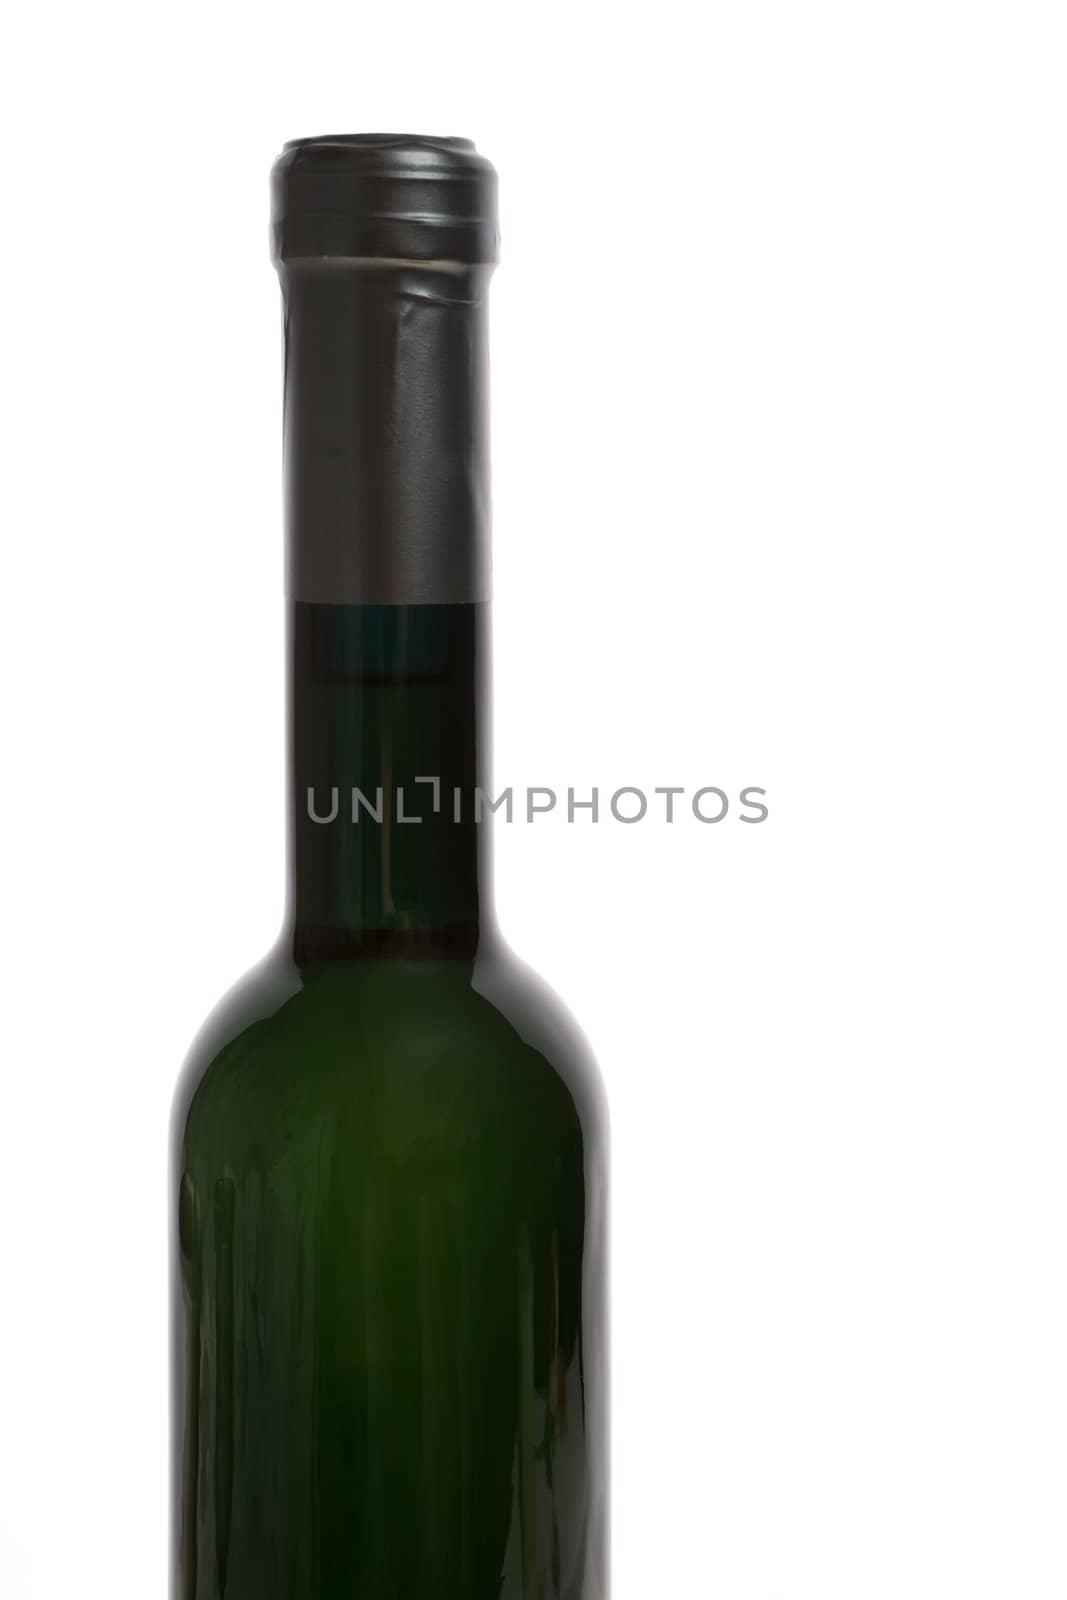 Isolated white wine bottle on white background.